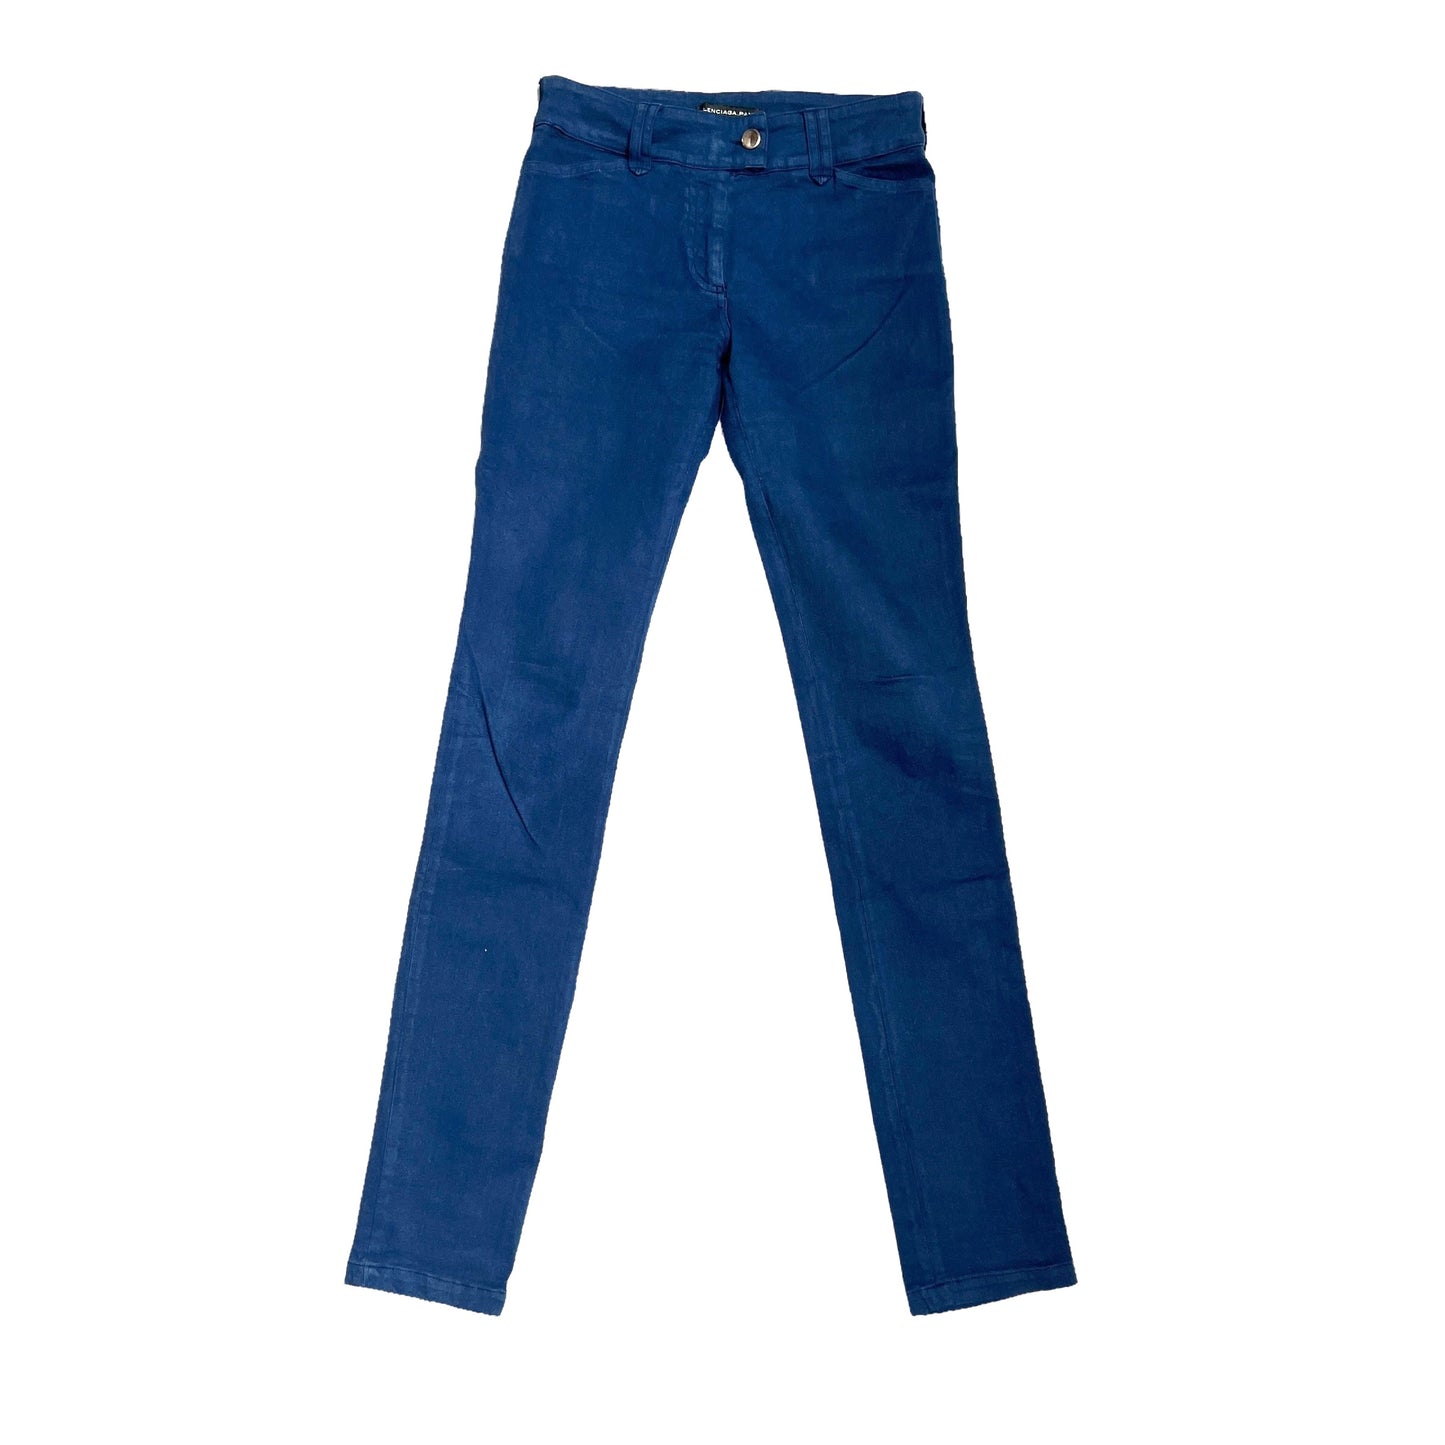 Blue Cotton Jeans - S